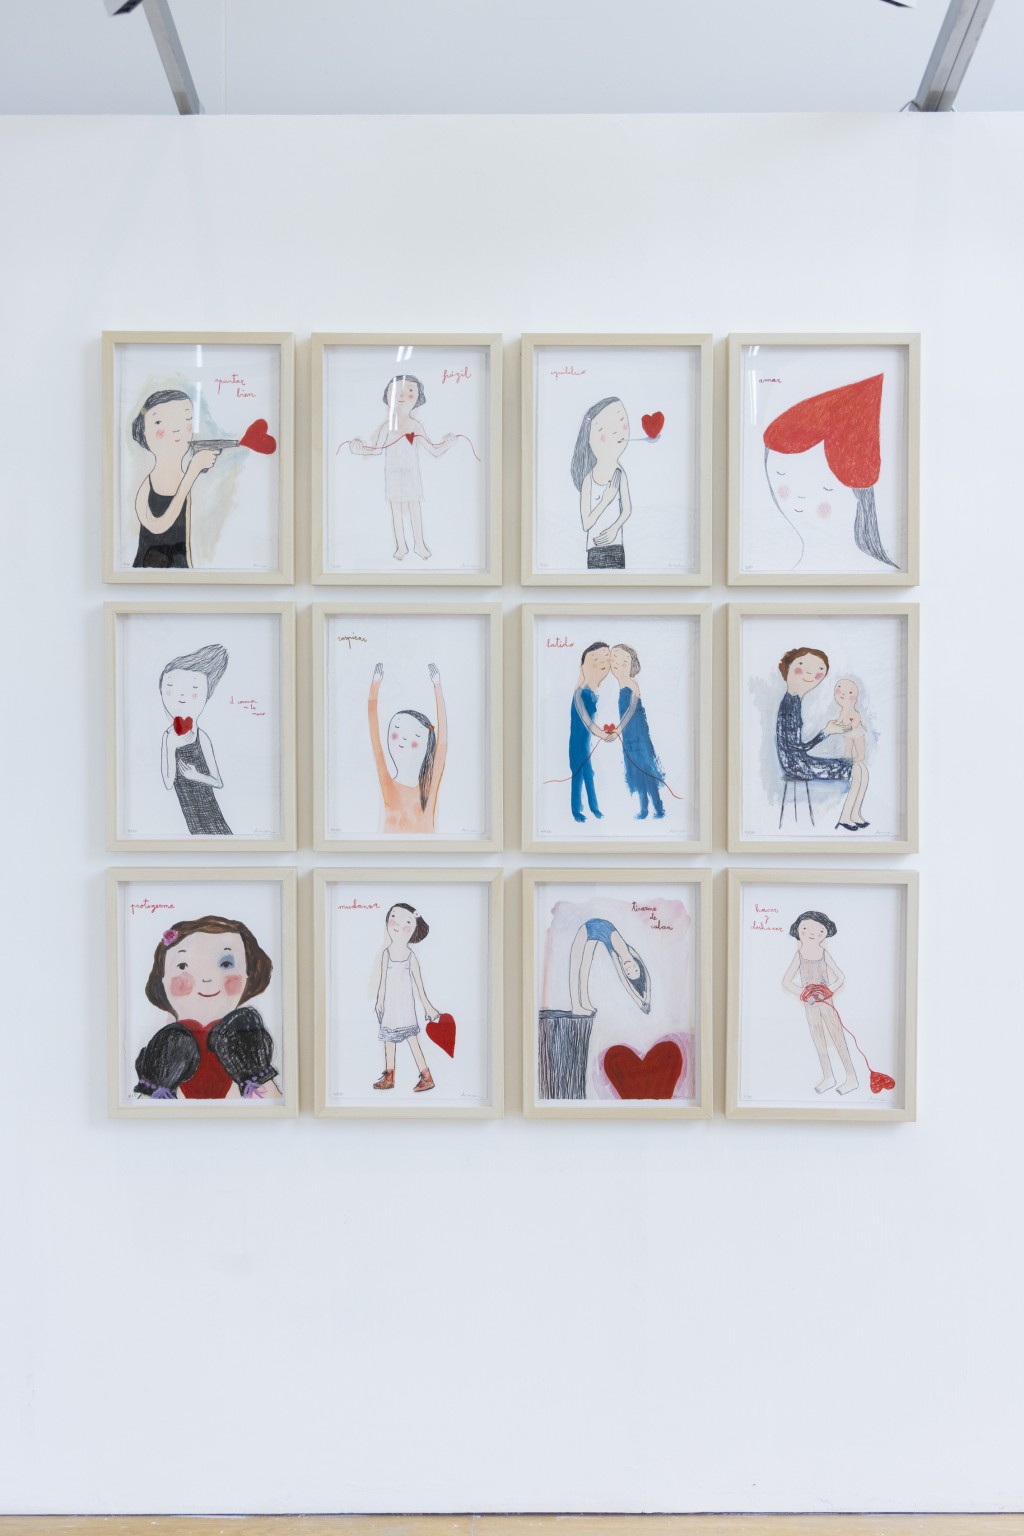 除了油畫，Eva亦有創作故事性的系列版畫，這組以紅心連繫的12幅作品，展示愛與正能量。